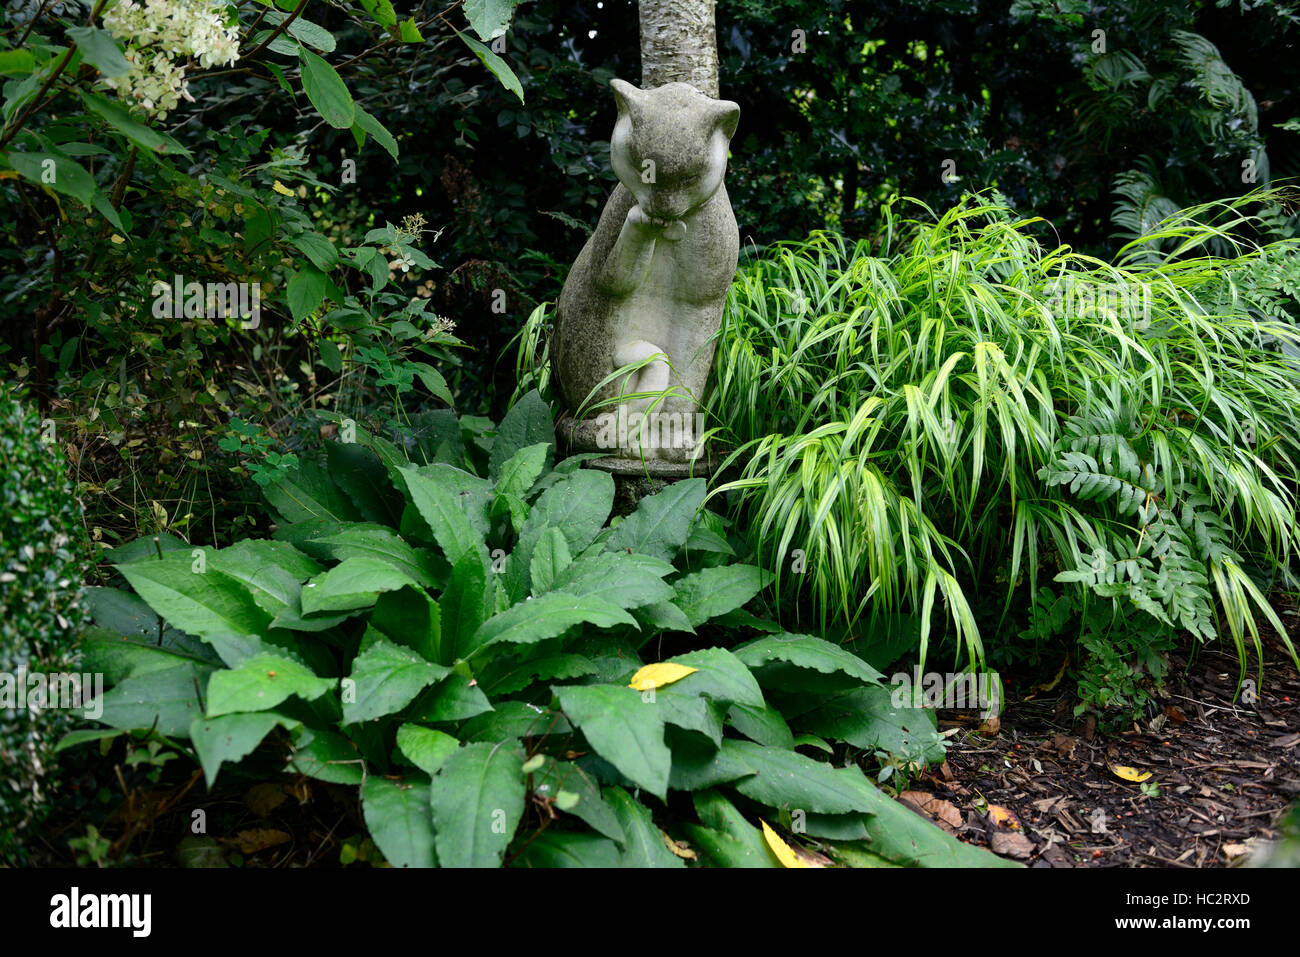 la estatua del gato medita contemplar el jardín sombreado hojas de follaje mezclado plantas velas rm floral Foto de stock